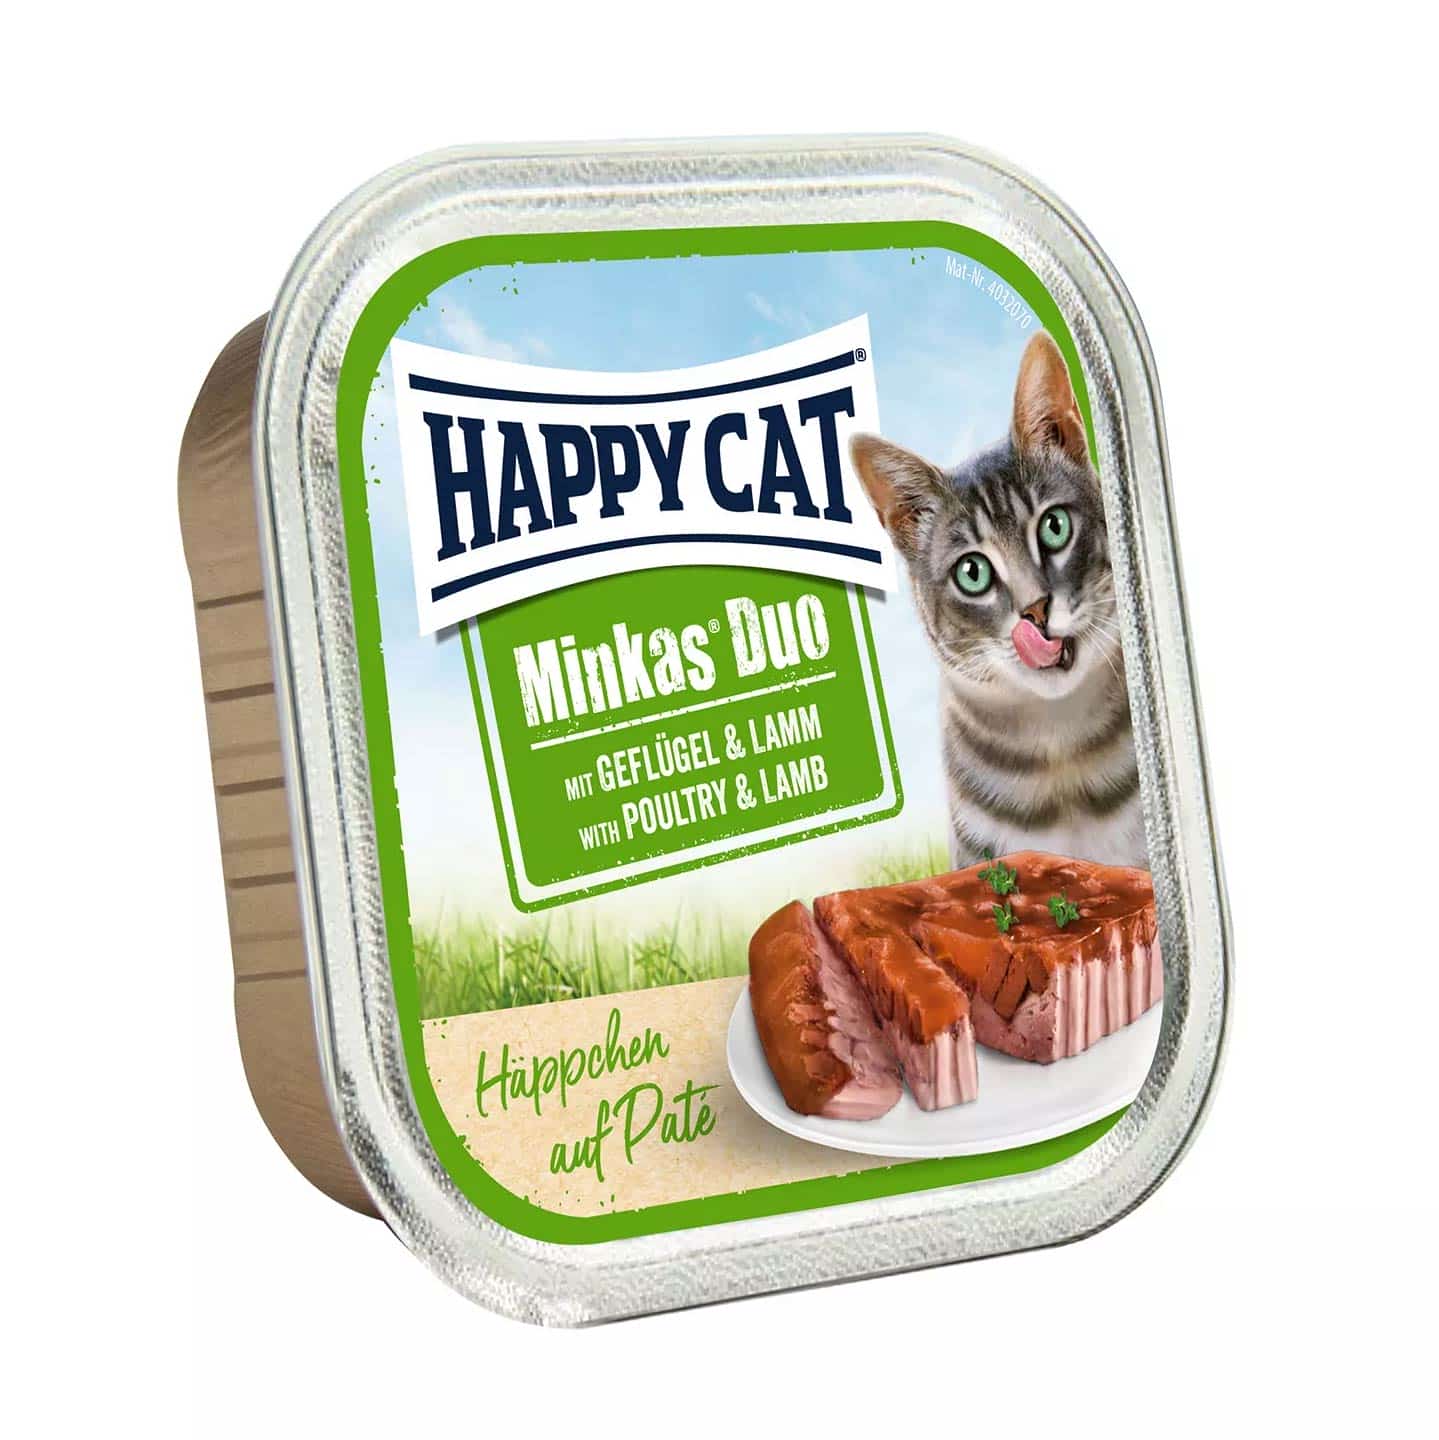 | ووم گربه هپی کت مینکاس طعم گوشت بره و مرغ 100 گرم